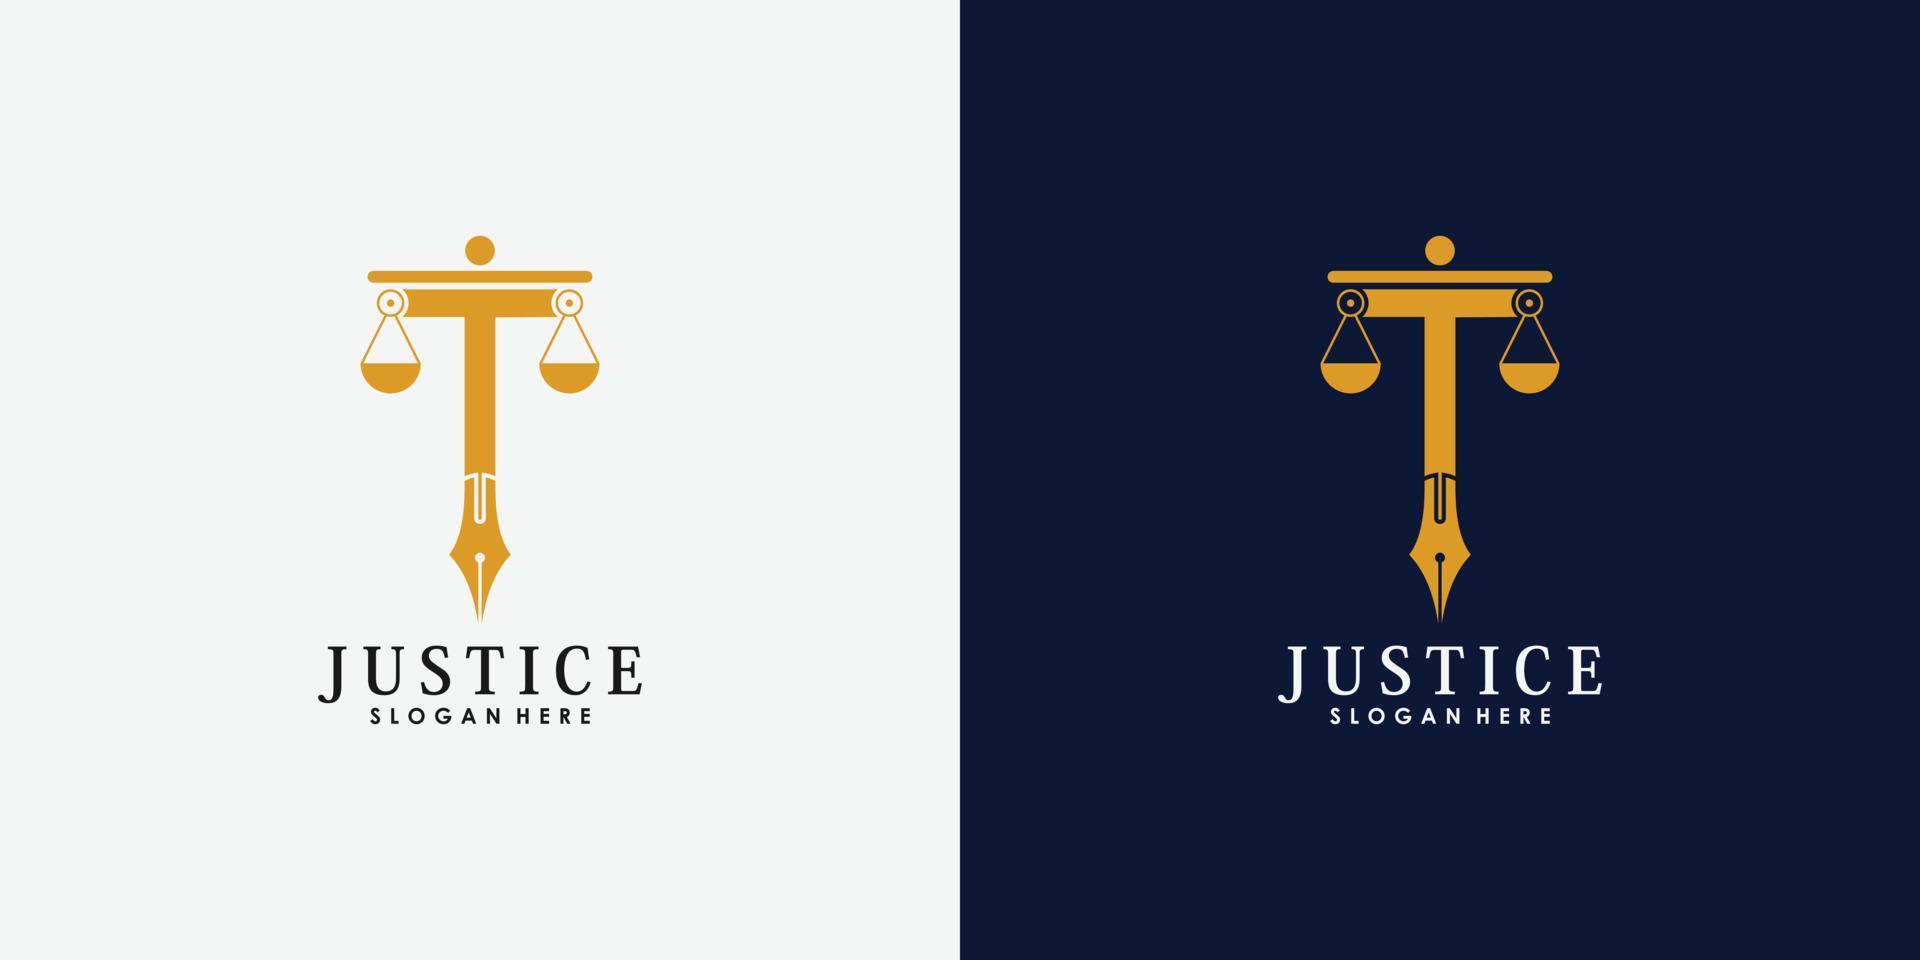 advocaat logo ontwerp met pen embleem creatief concept premie vector